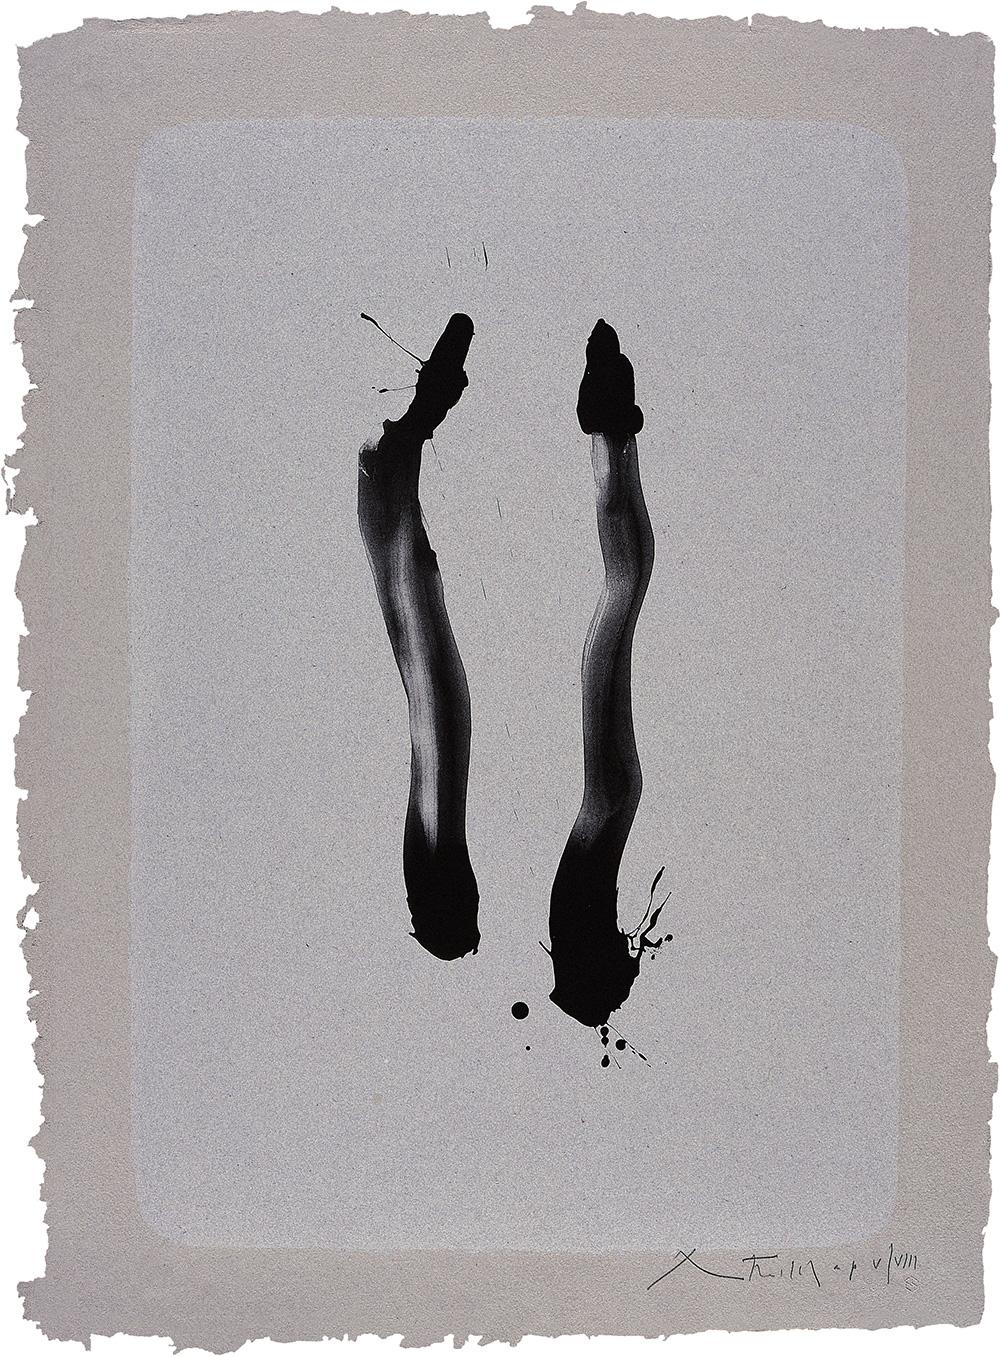 Abstract Print Robert Motherwell - Pierre de taille de la pierre